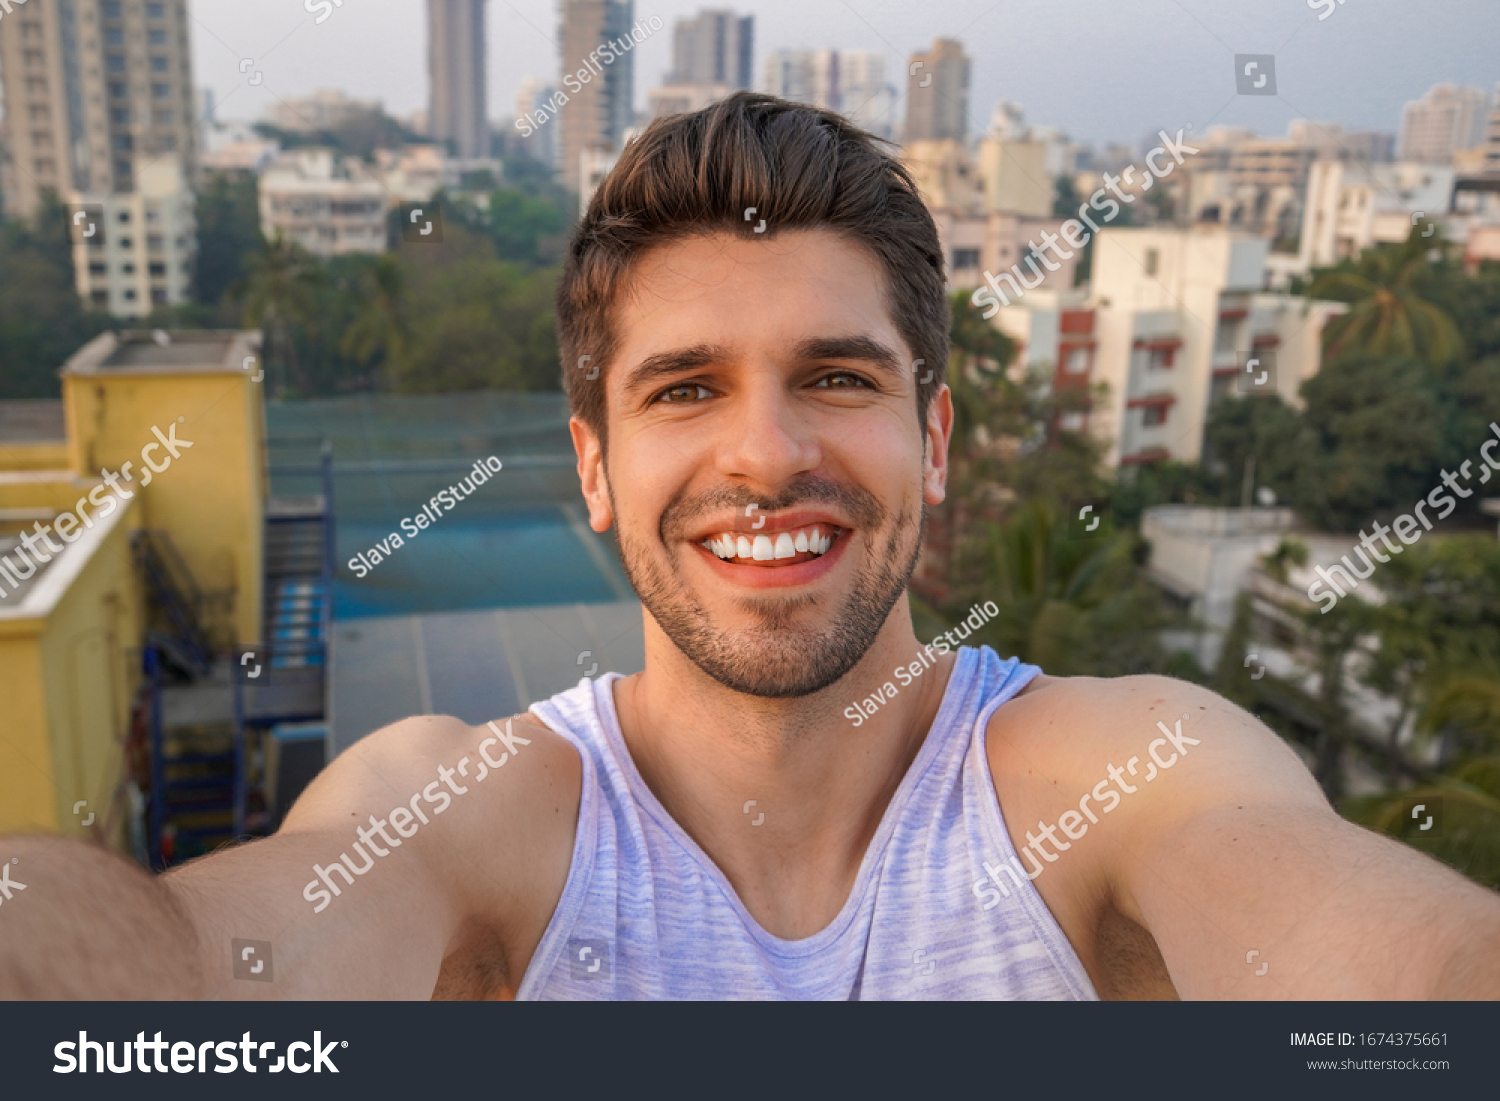 Man selfie looking good Selfies Make